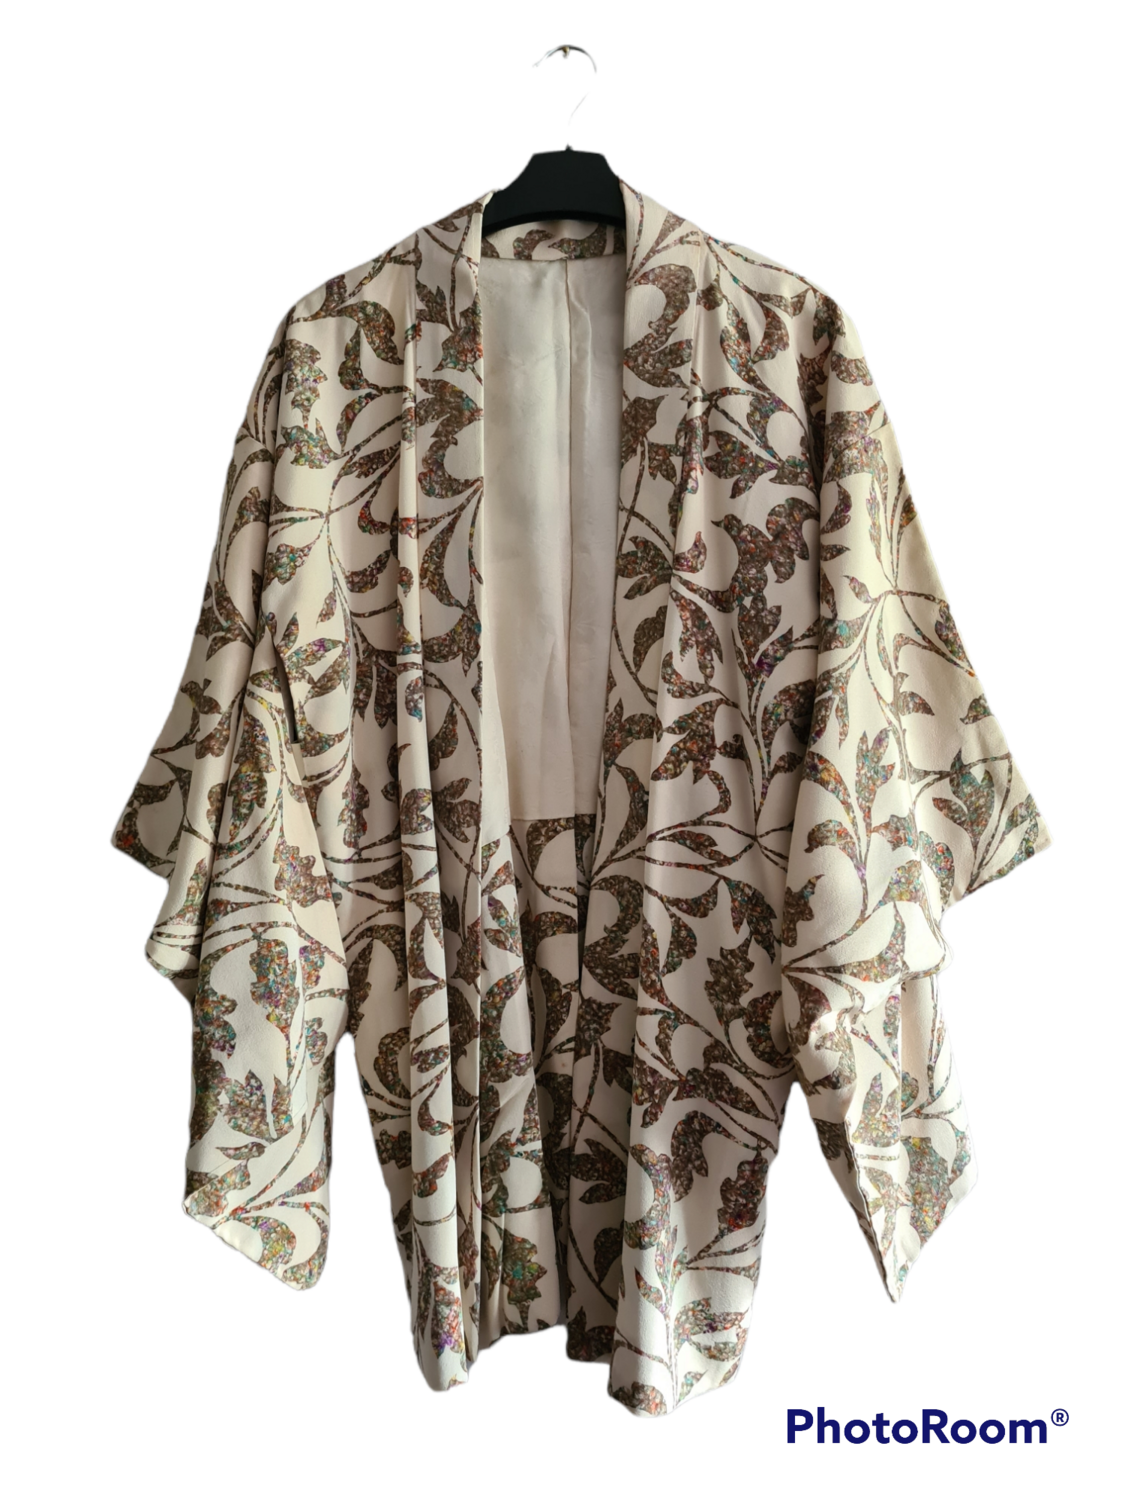 1960's handmade Japanese Kimono jacket - one size